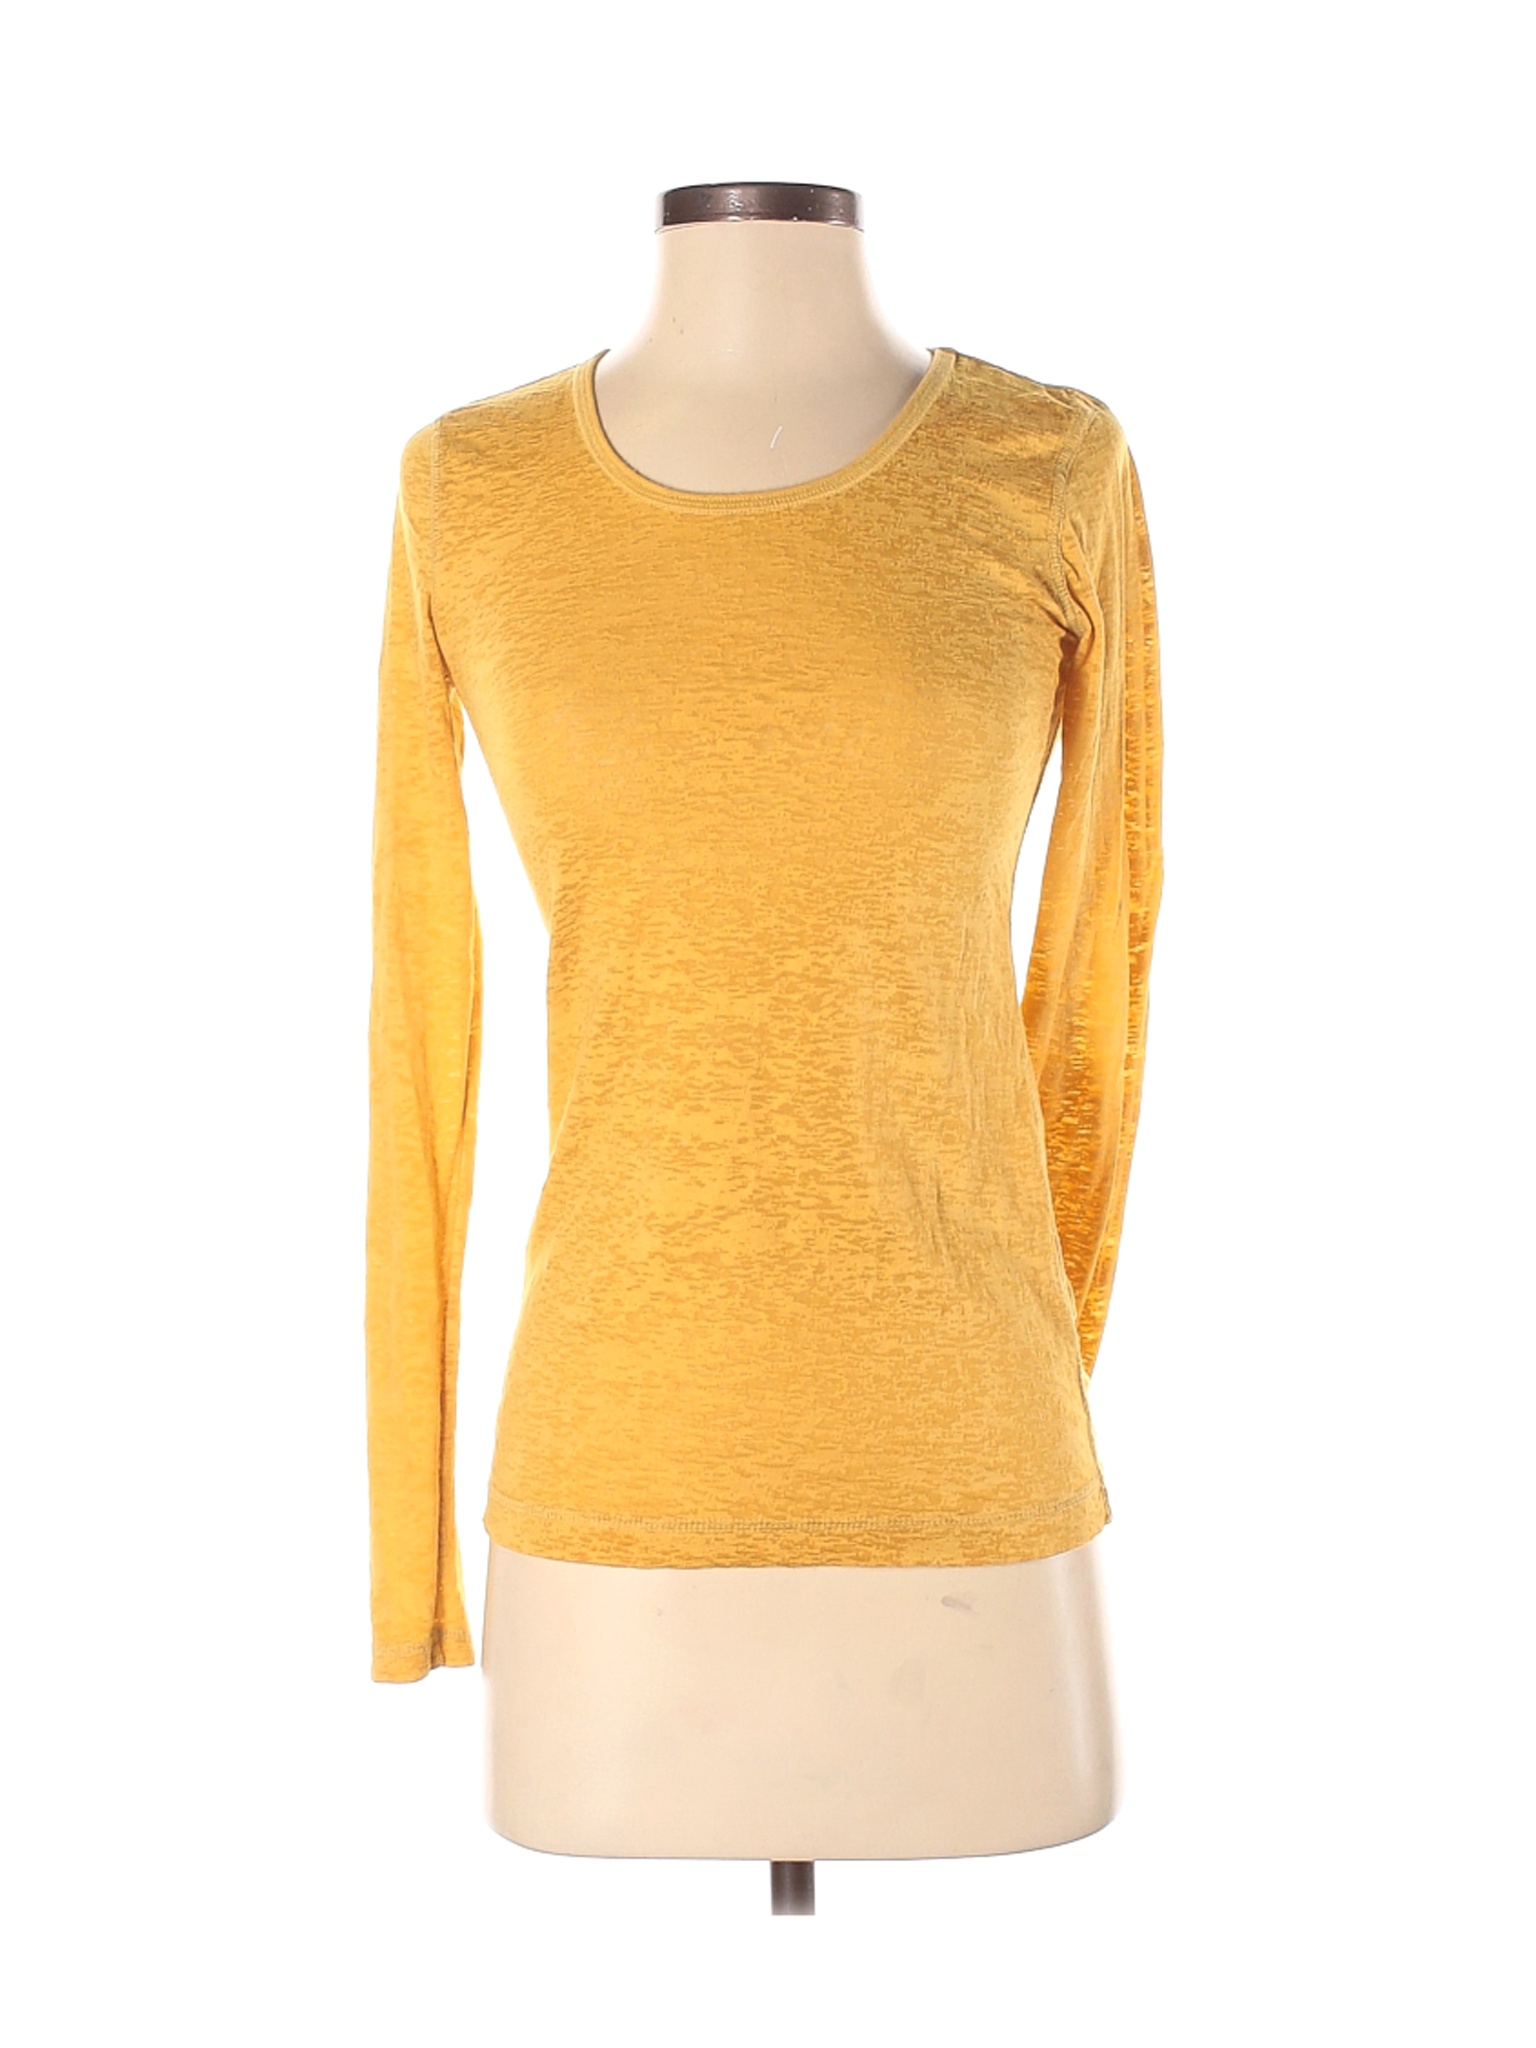 Mudd Women Yellow Long Sleeve T-Shirt S | eBay